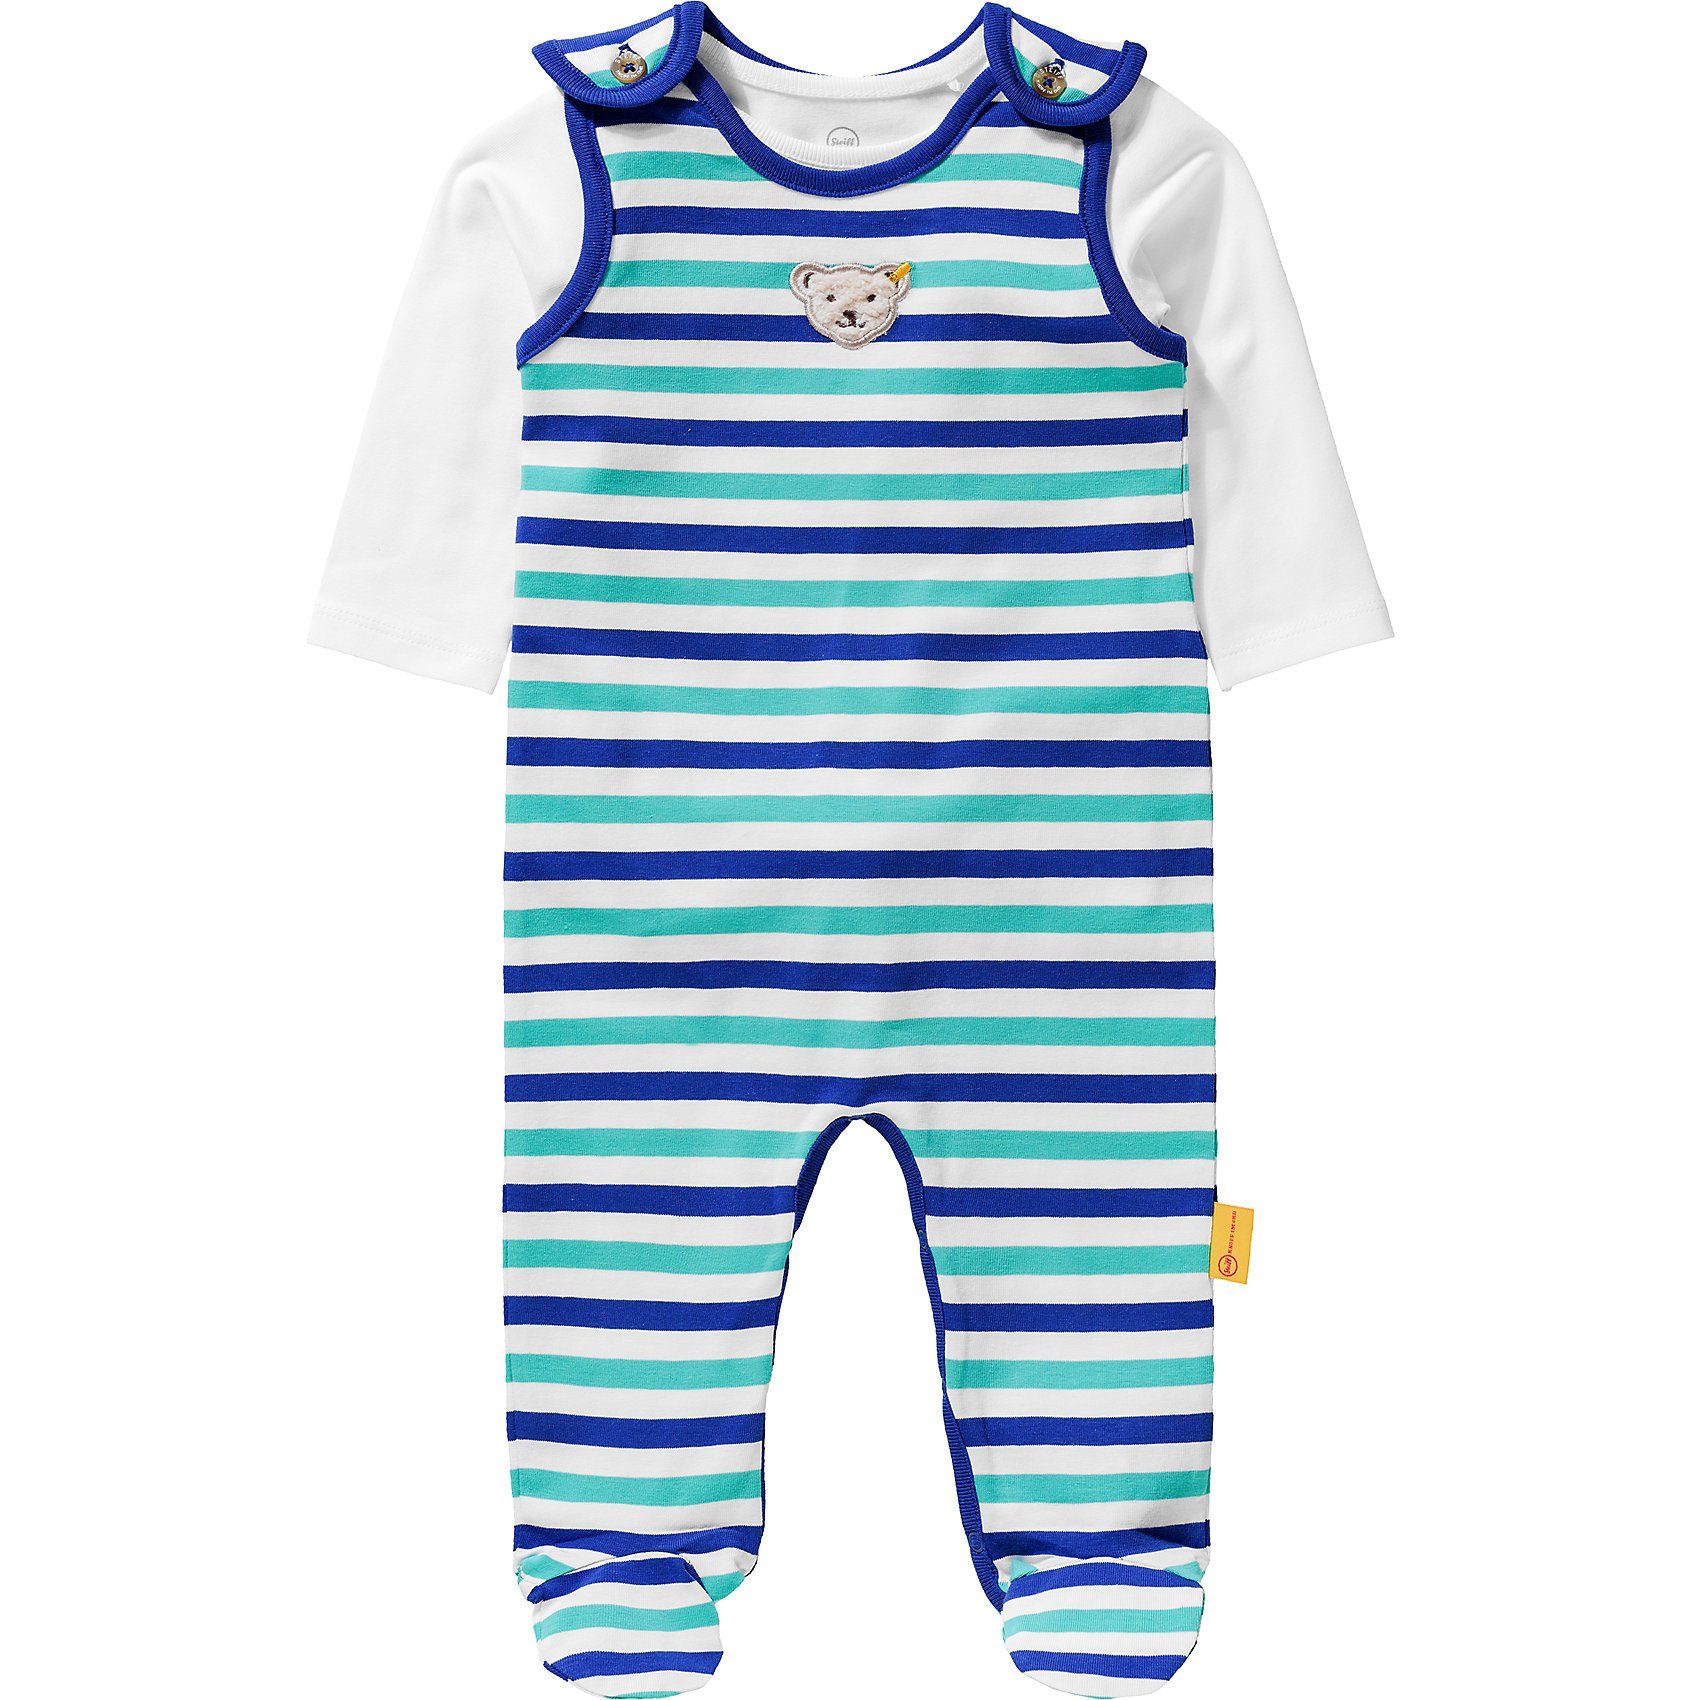 Peppa Pig Schlafanzug-Pyjama von George Pig Schlafanzug f/ür Jungen im Alter von 1-5 Jahren. 3 Jahre Blau